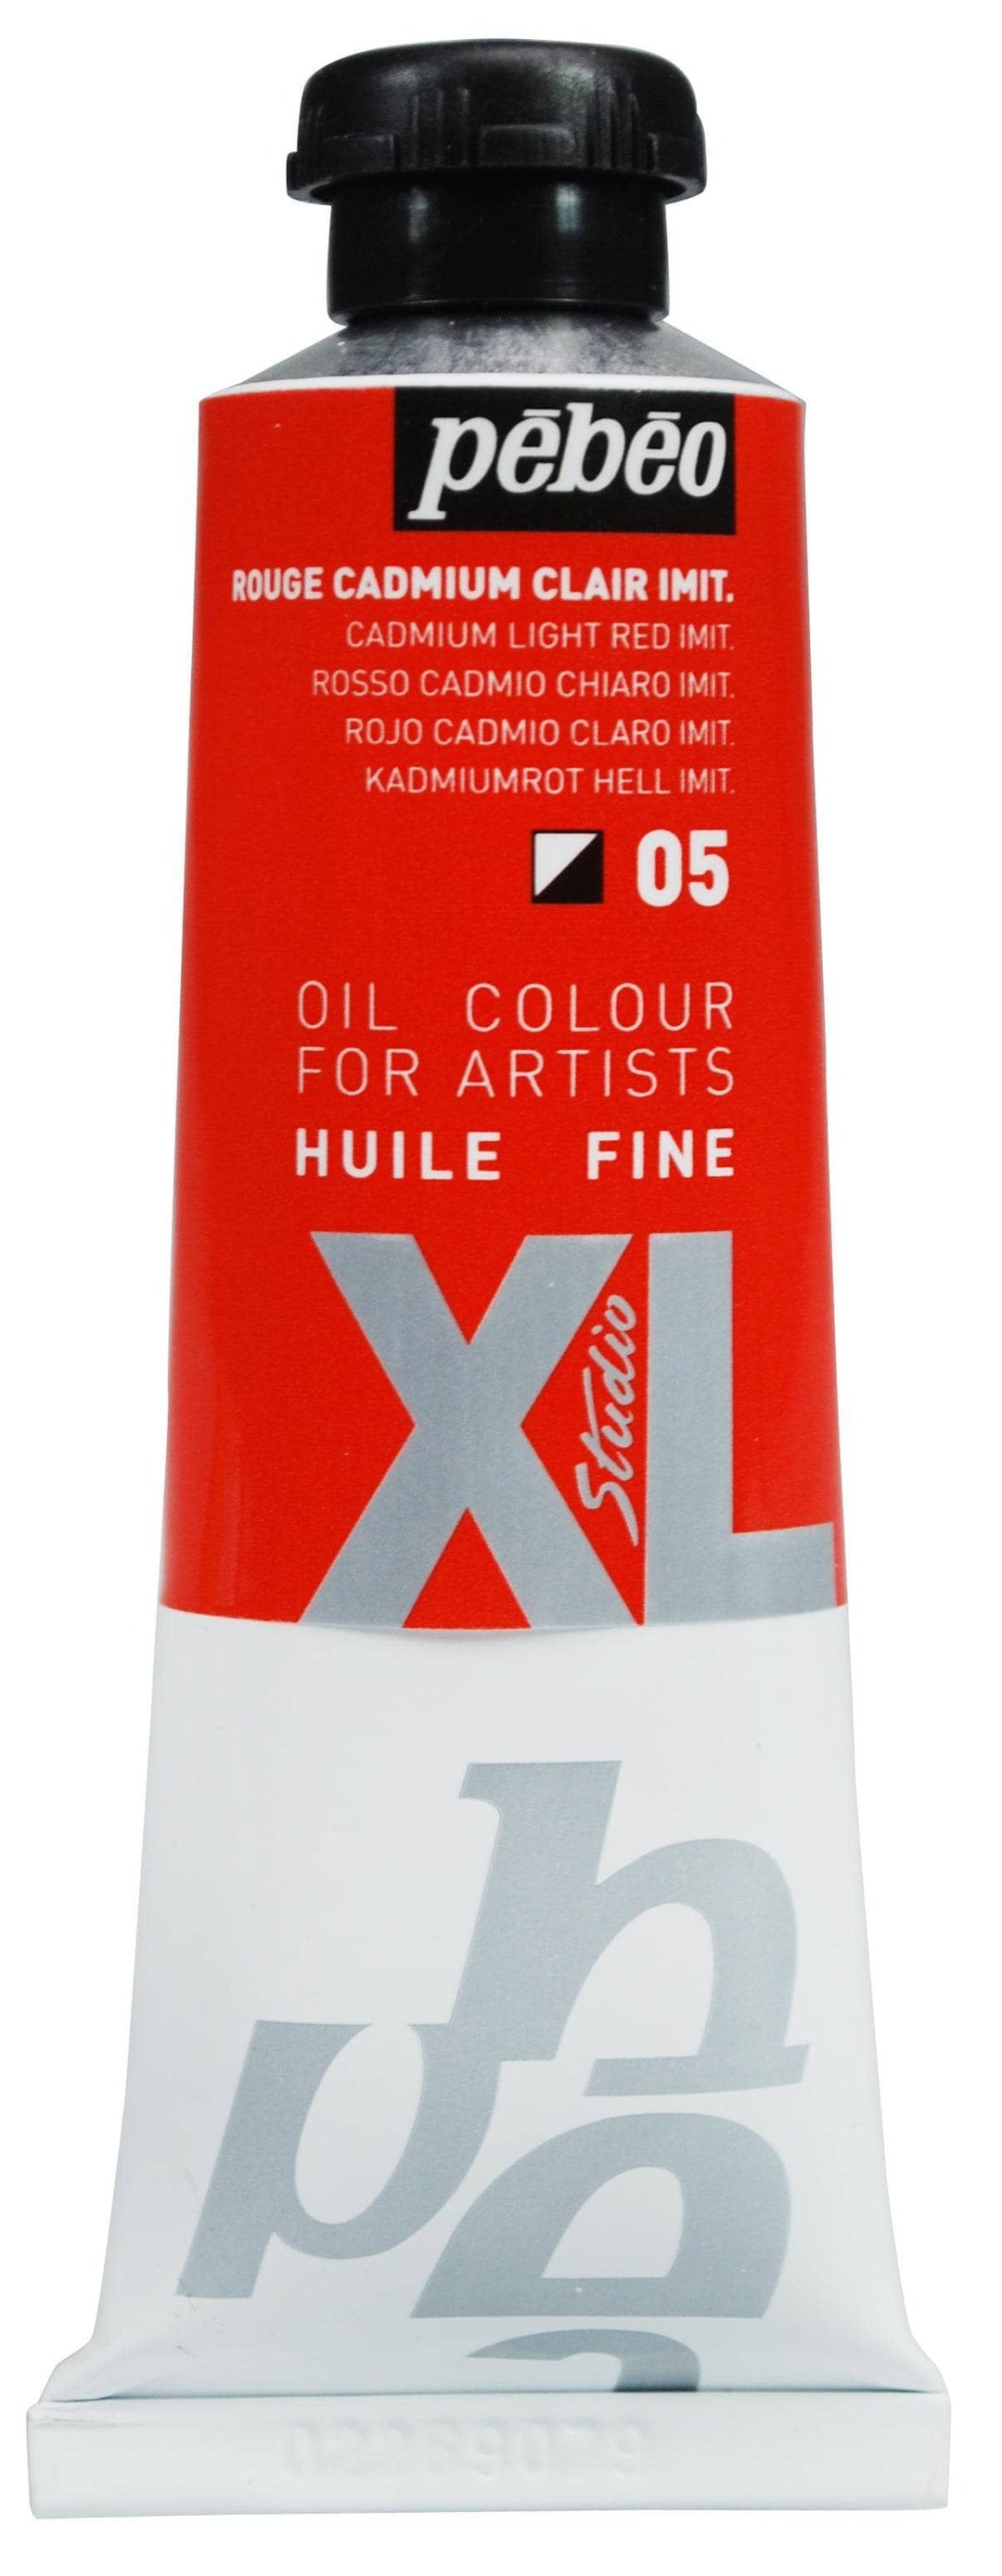 Huile fine Studio XL 37ml - Rouge Cadmium Clair Imit.
PB937005